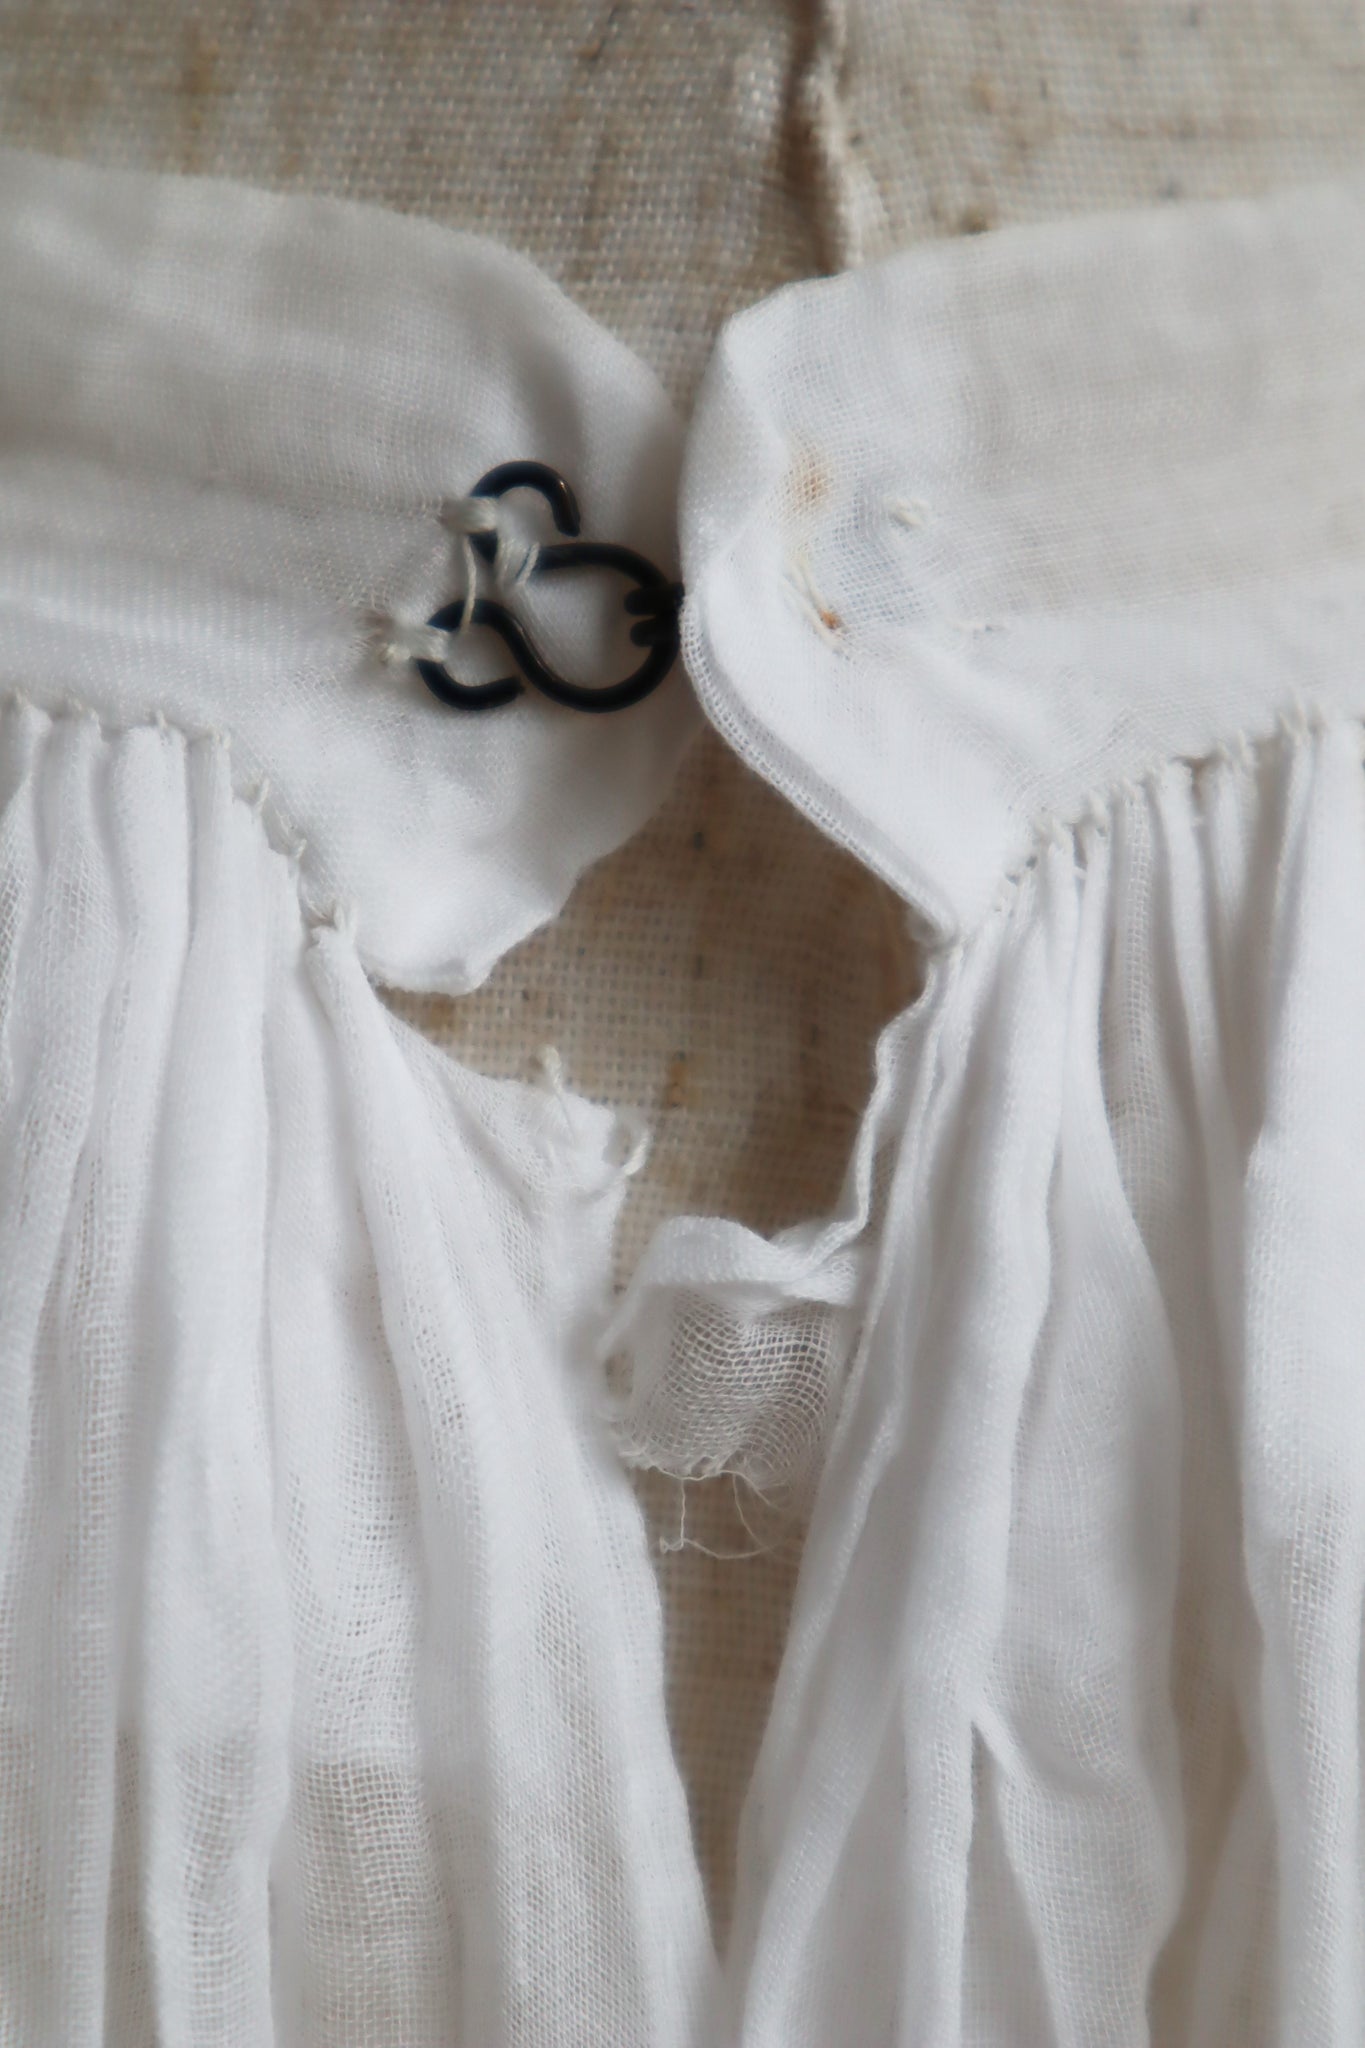 1910s Muslin Cotton Petticoat Skirt